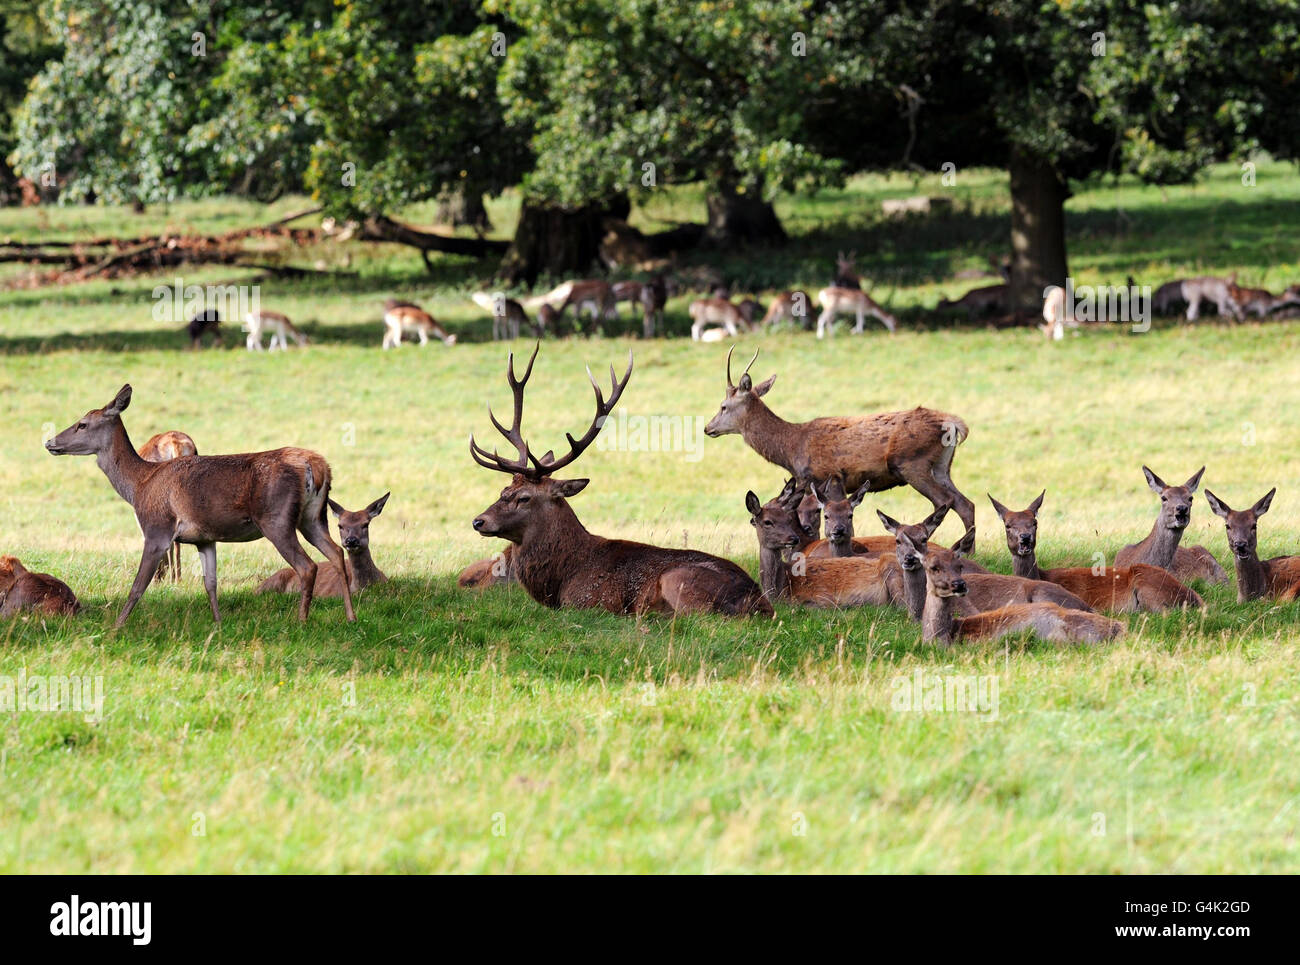 Da die Brunftzeit in Hirschparks in ganz Großbritannien gerade beginnt, treffen Hirsche die Herden, um ihr Territorium in der Parklandschaft von Studley Royal in der Nähe von Ripon, Yorkshire, abzustecken. Stockfoto